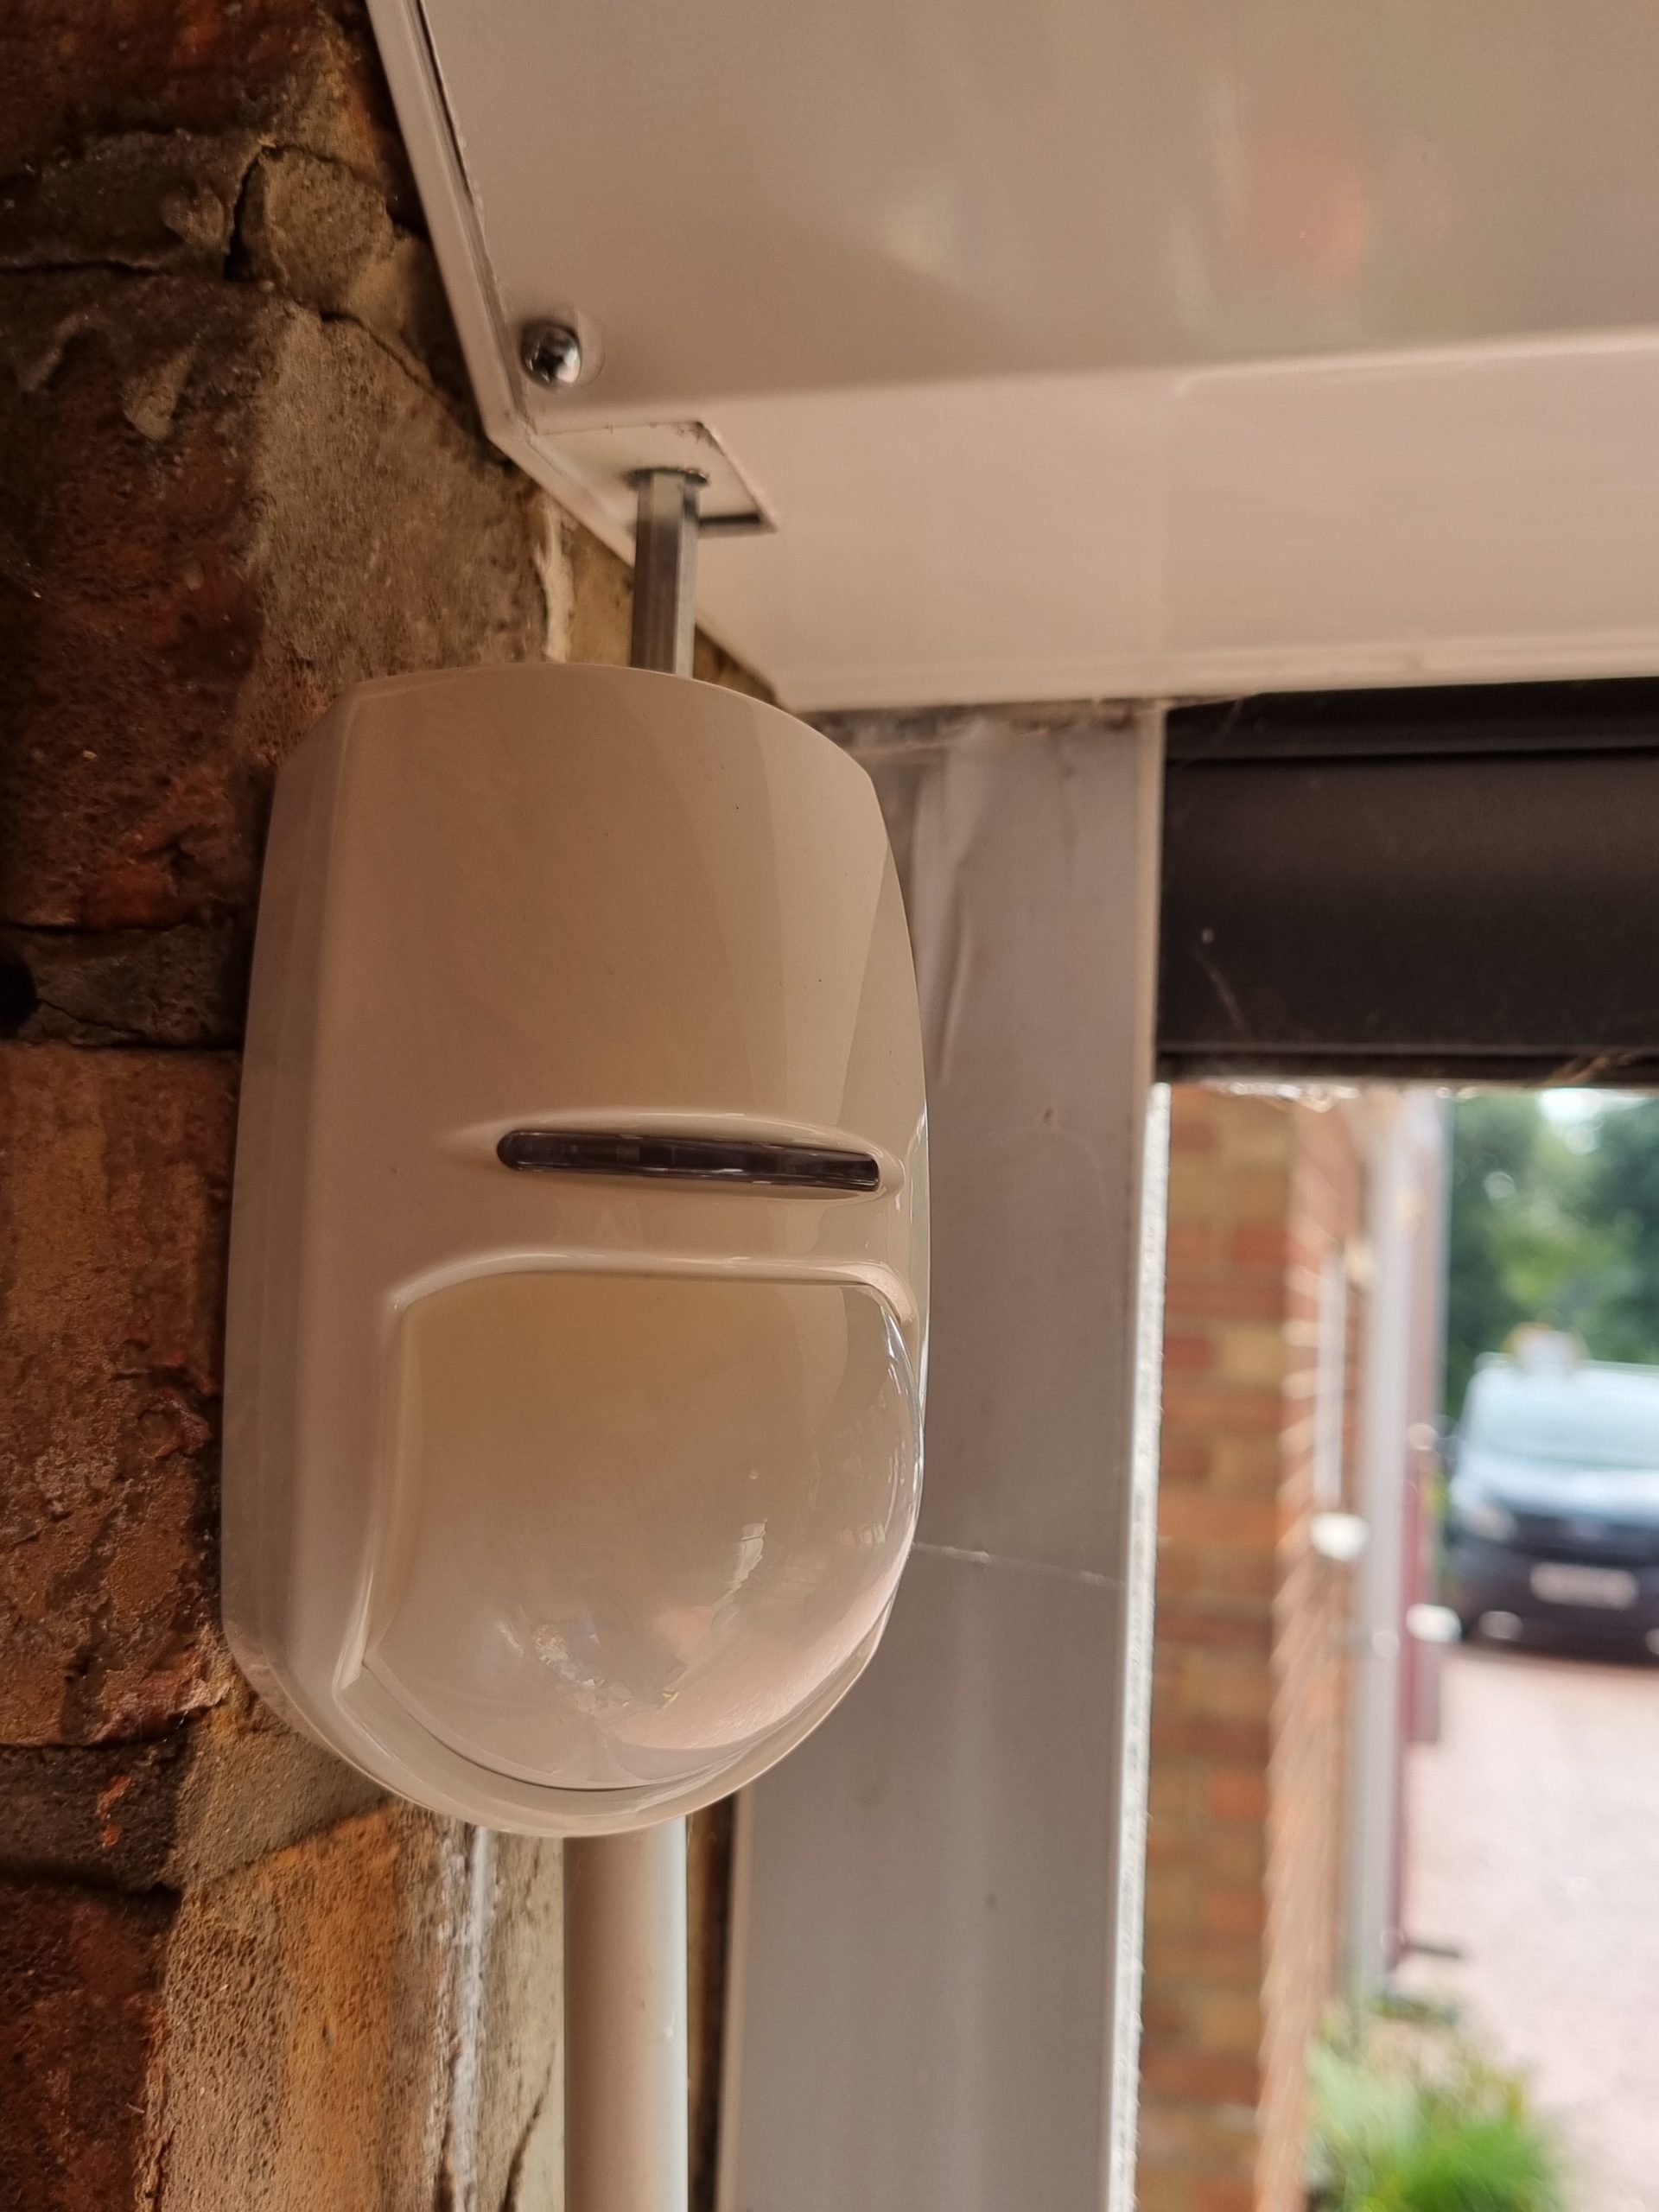 A wireless PIR for a wireless burglar alarm.